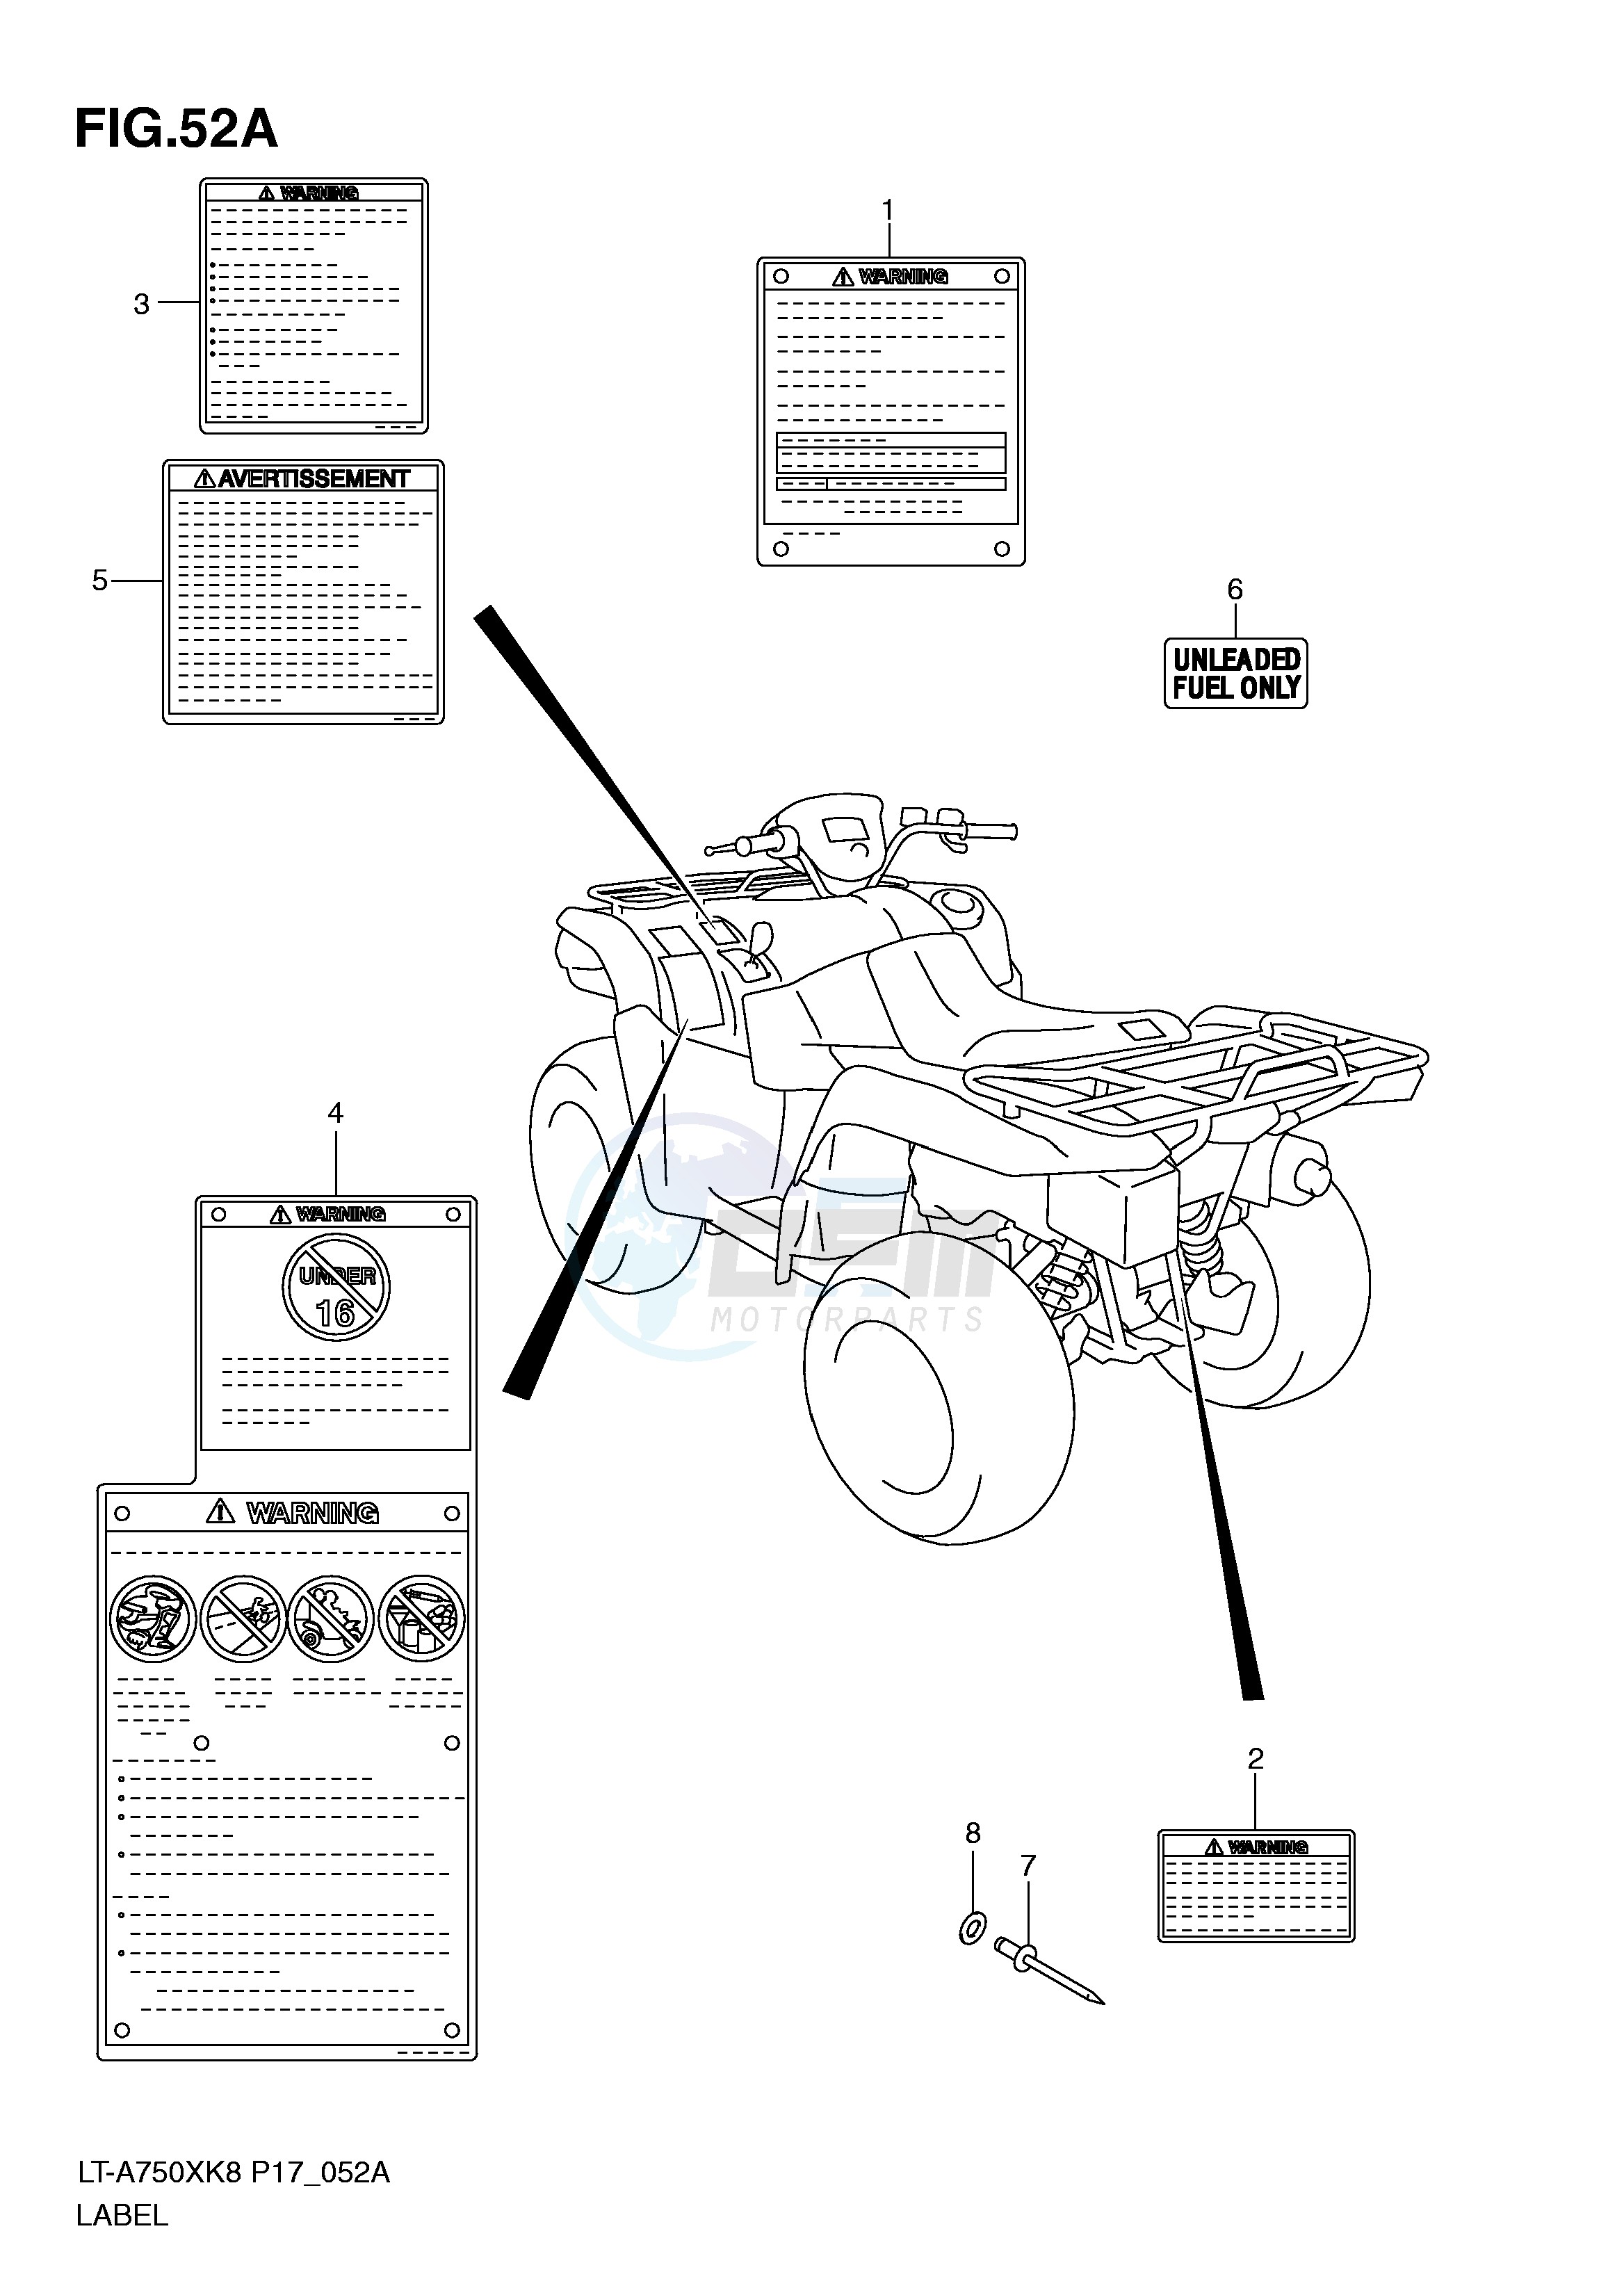 LABEL (LT-A750XK9 XZK9) blueprint